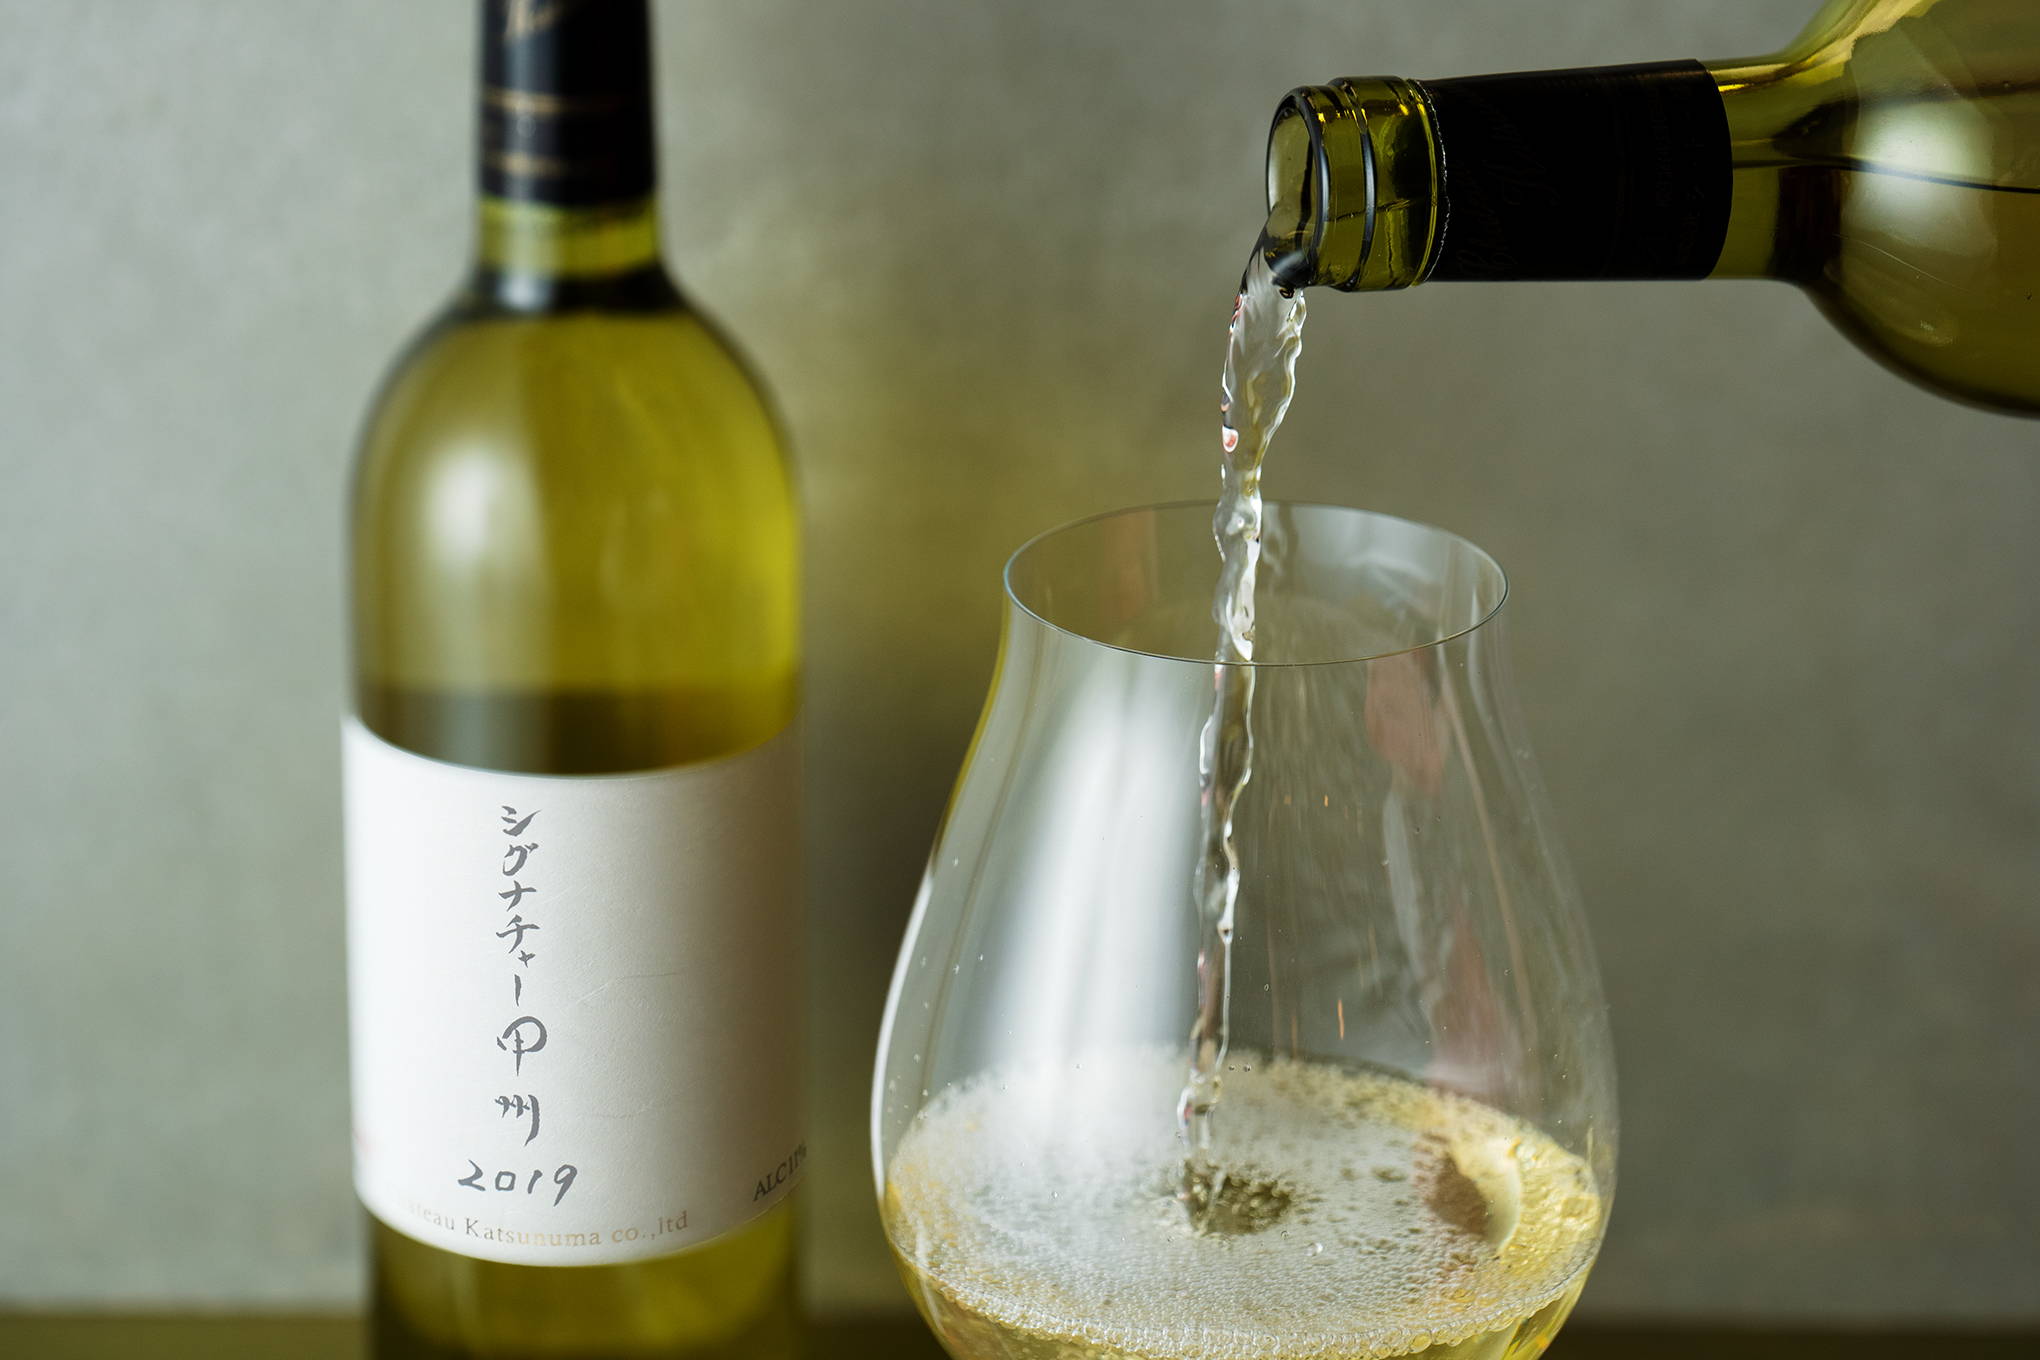 wa-syu限定醸造、『シャートー勝沼』の「シグナチャー甲州 2019」は、勝沼トンネルワインカーヴでじっくり熟成。